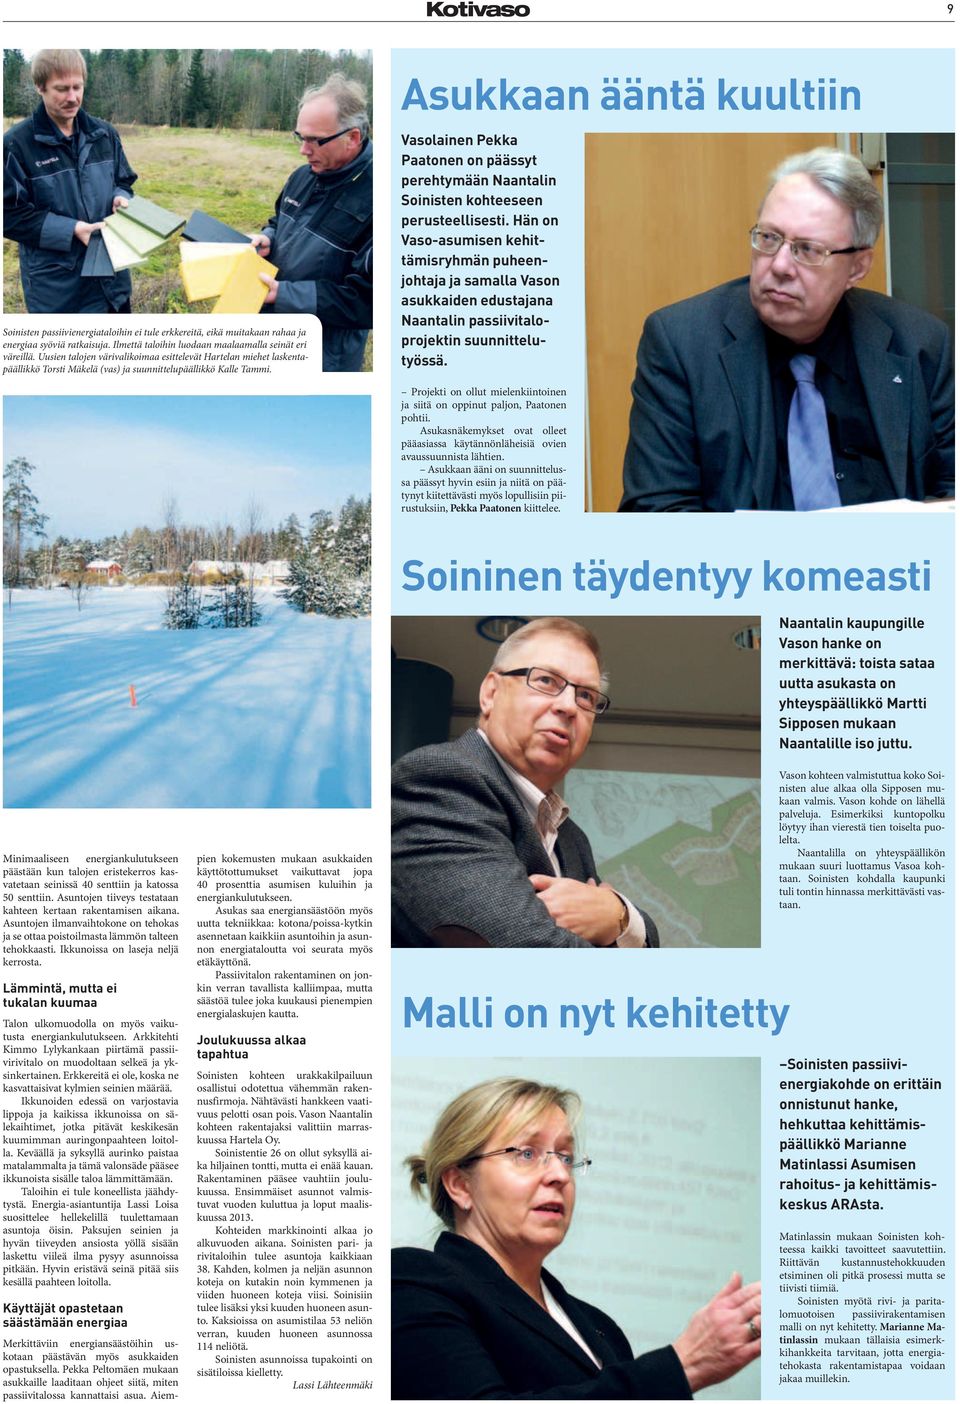 Asukkaan ääntä kuultiin Vasolainen Pekka Paatonen on päässyt perehtymään Naantalin Soinisten kohteeseen perusteellisesti.